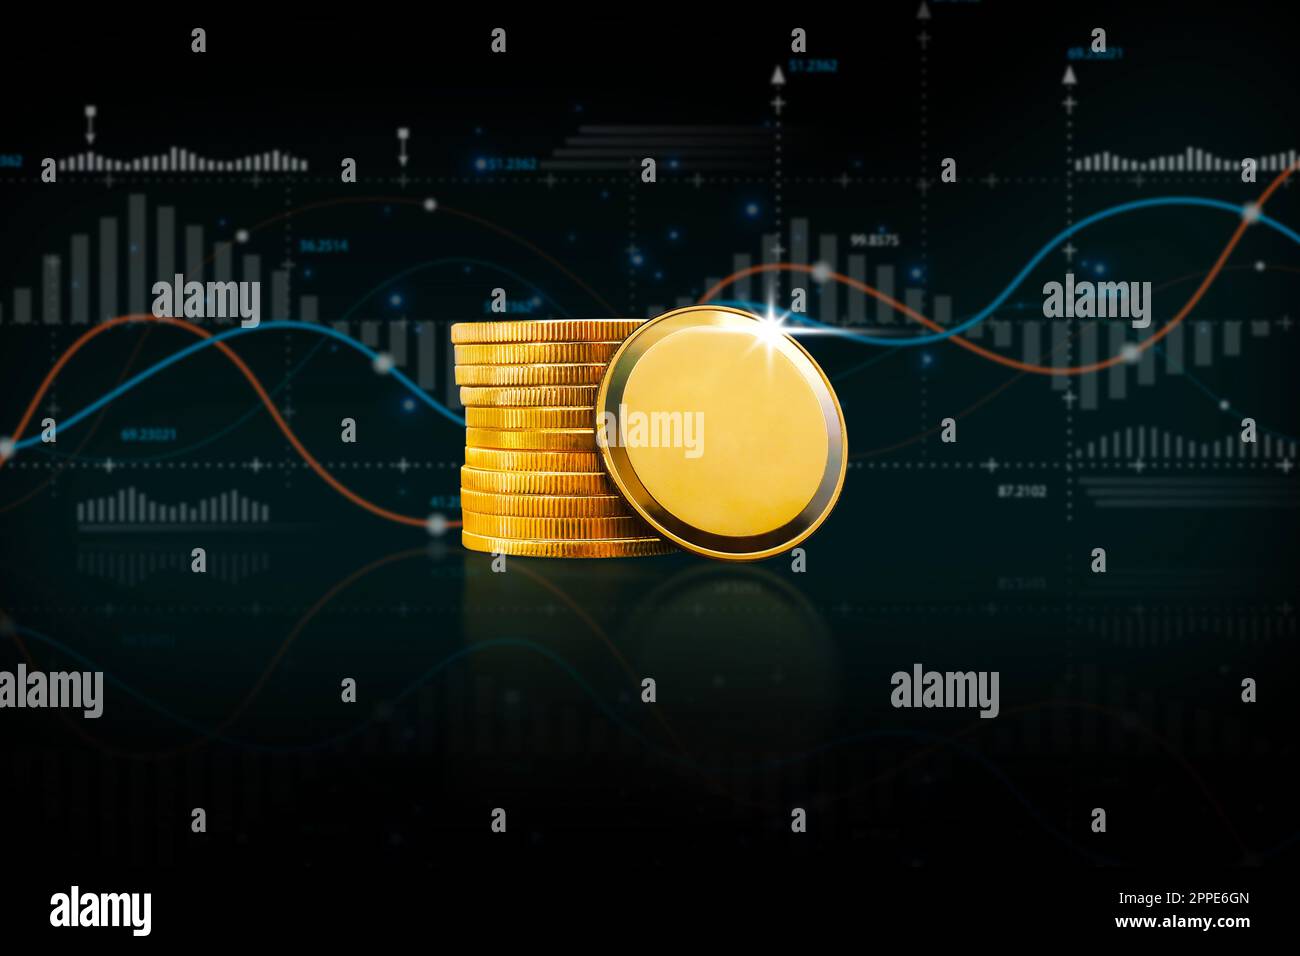 Leere Goldmünze oder Krypto-Währung mit Analysegrafik auf schwarzem Hintergrund, Konzept für digitale Währung und Investitionstechnologie. Stockfoto